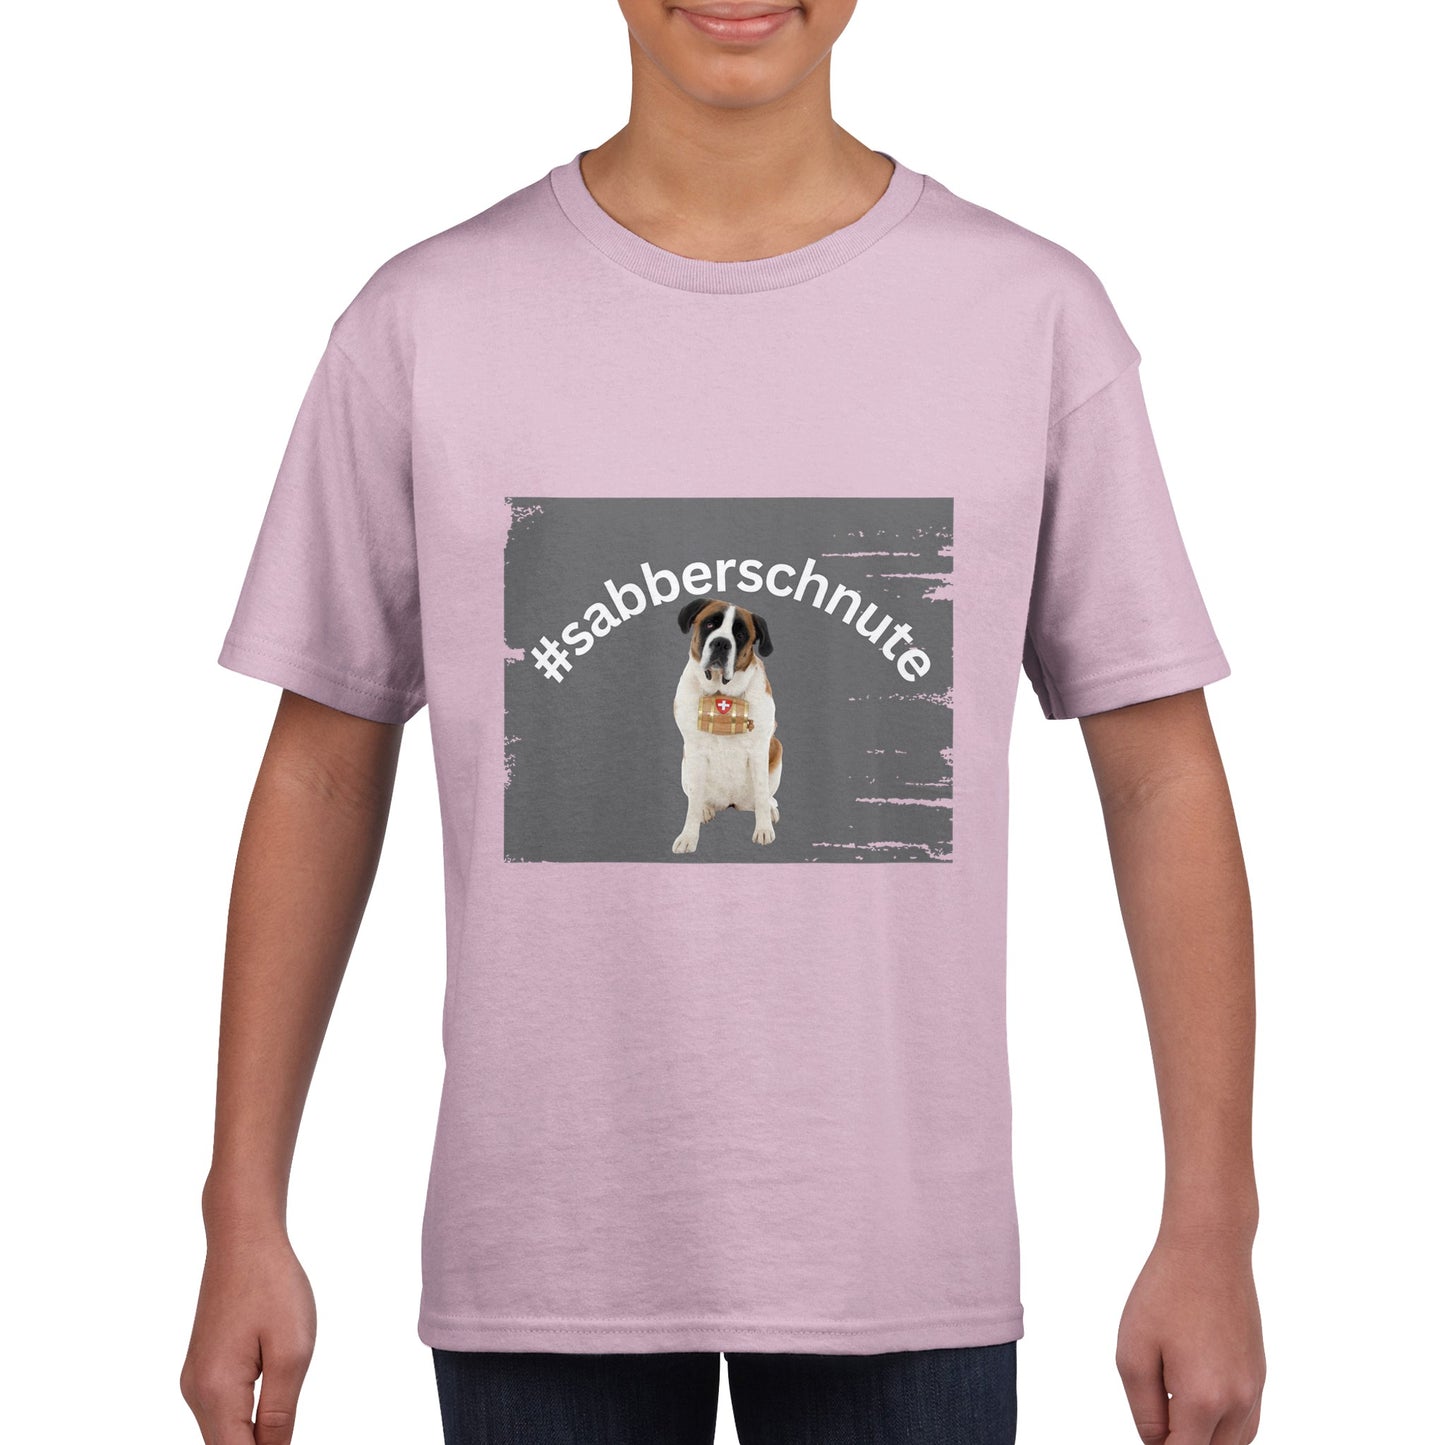 Sabberschnute Irma Kinder T - Shirt